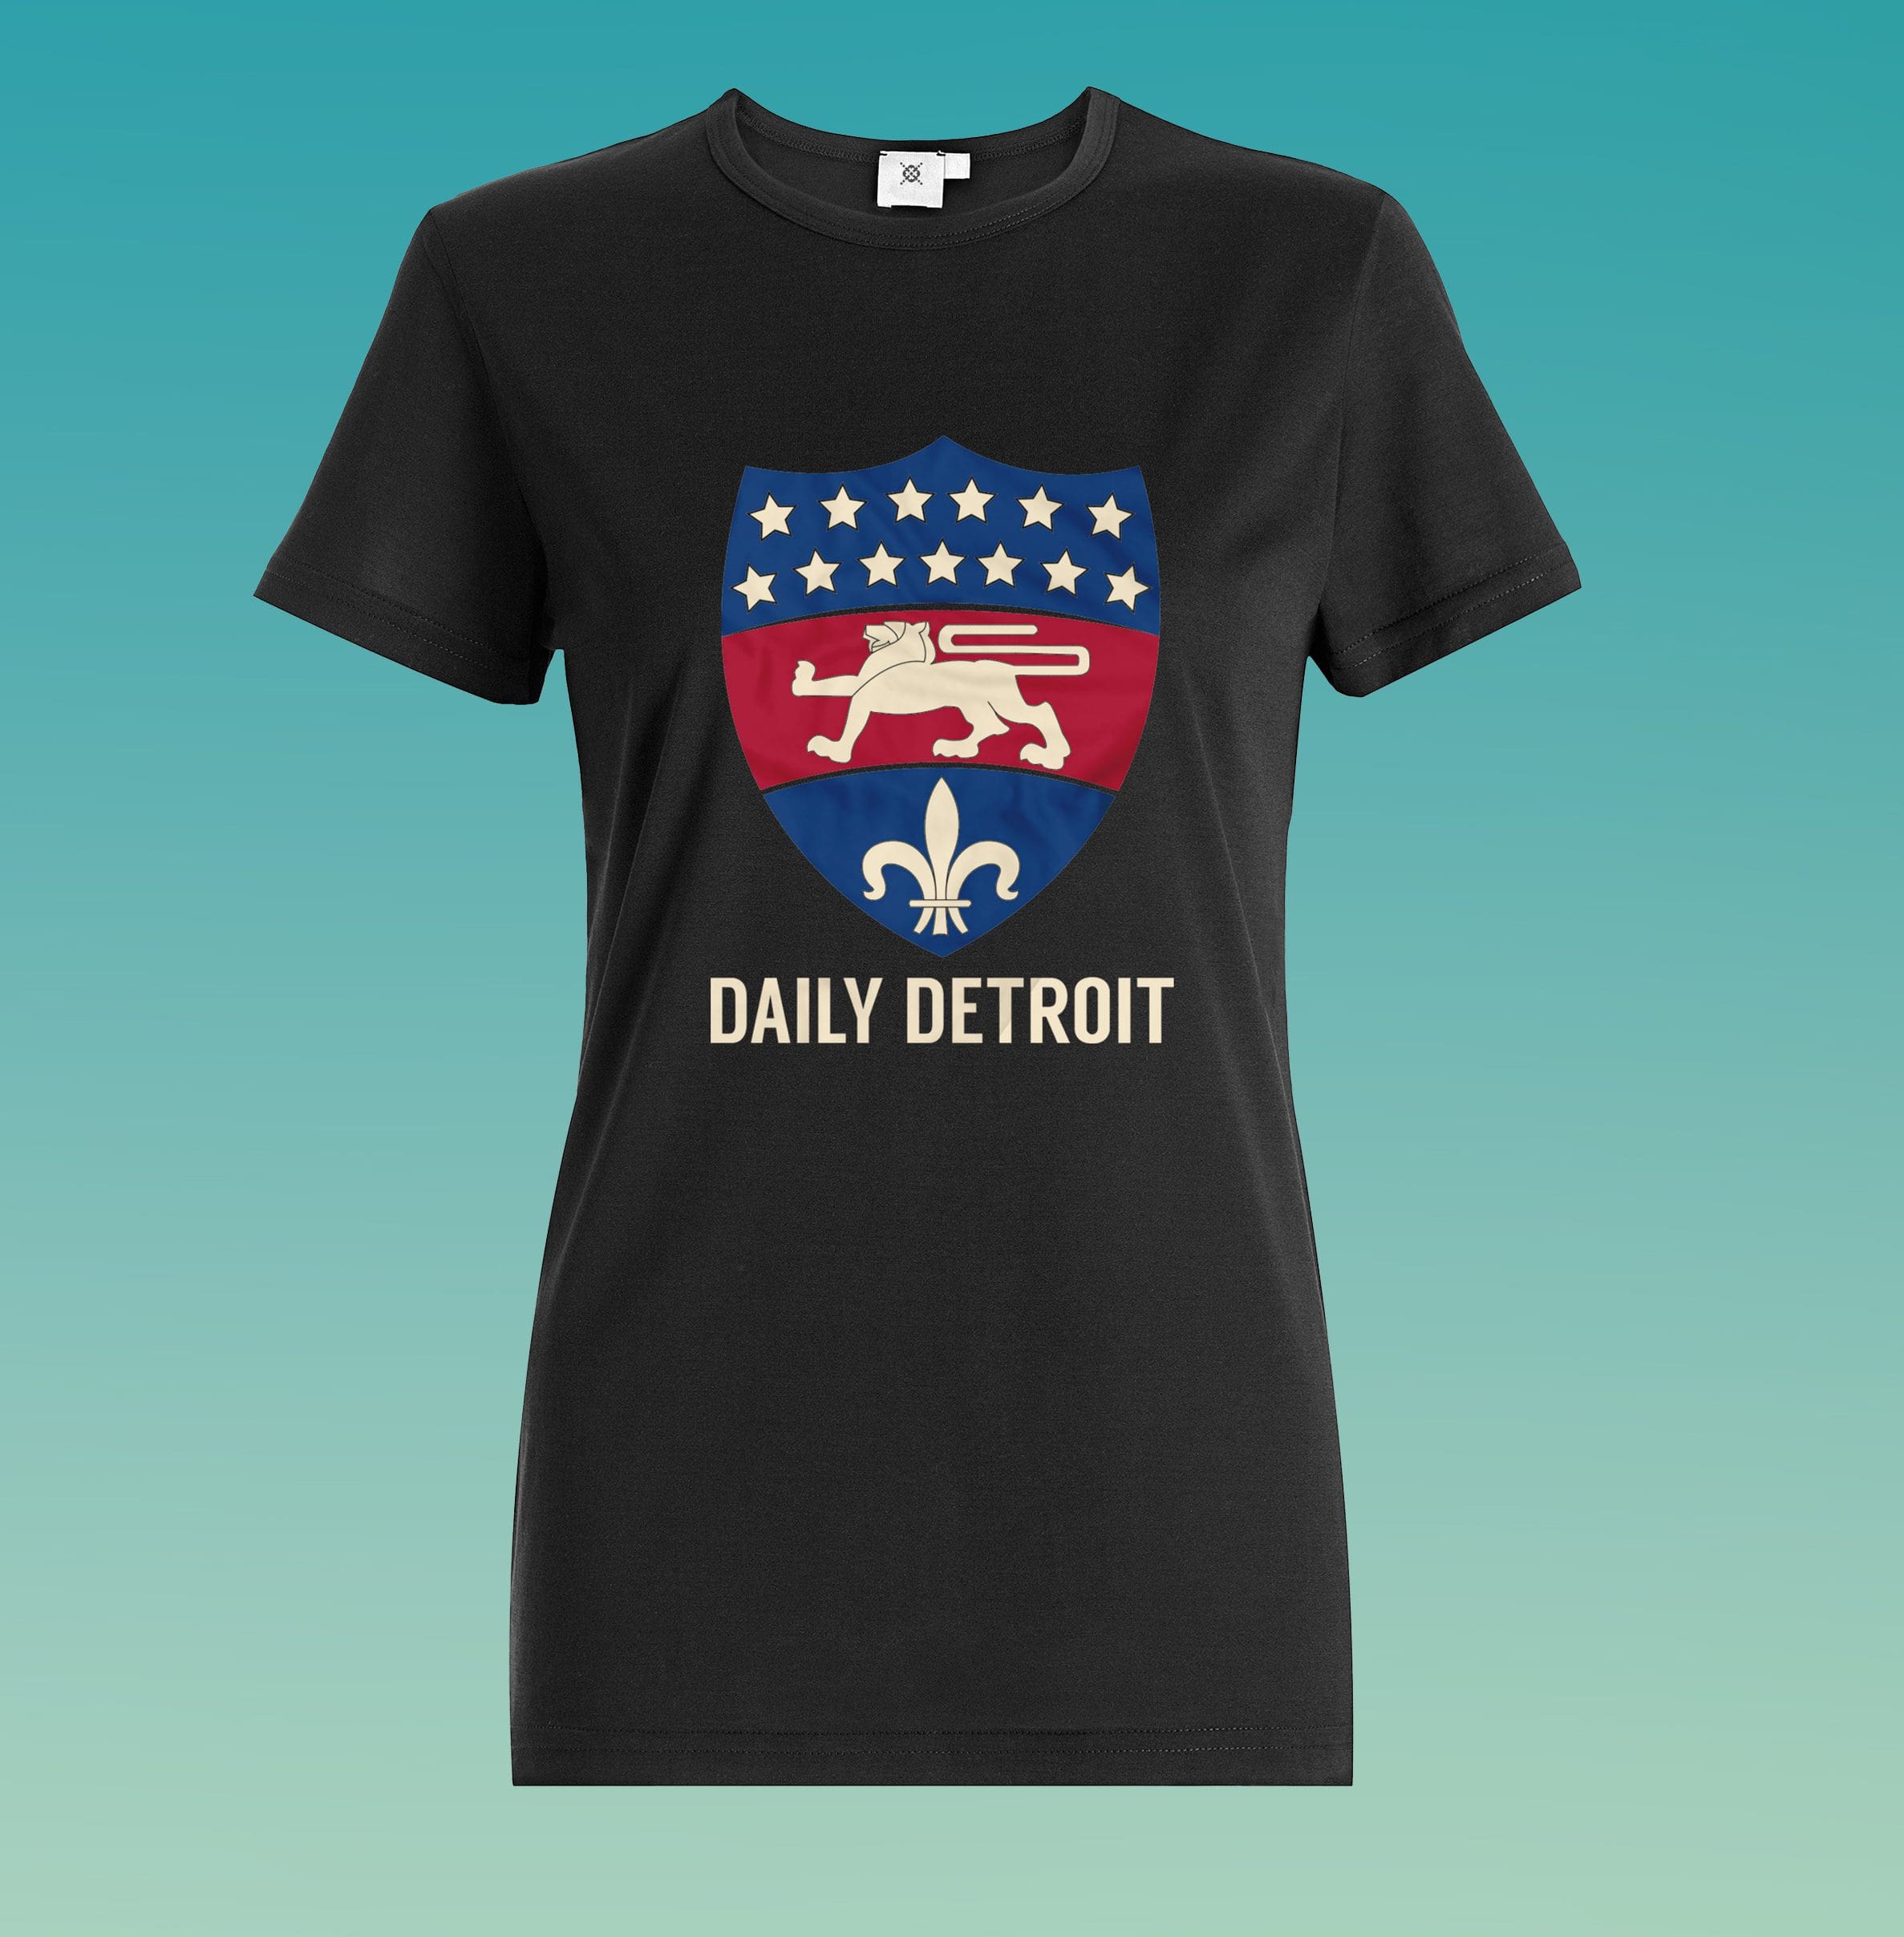 Daily Detroit - Shirt Mockup